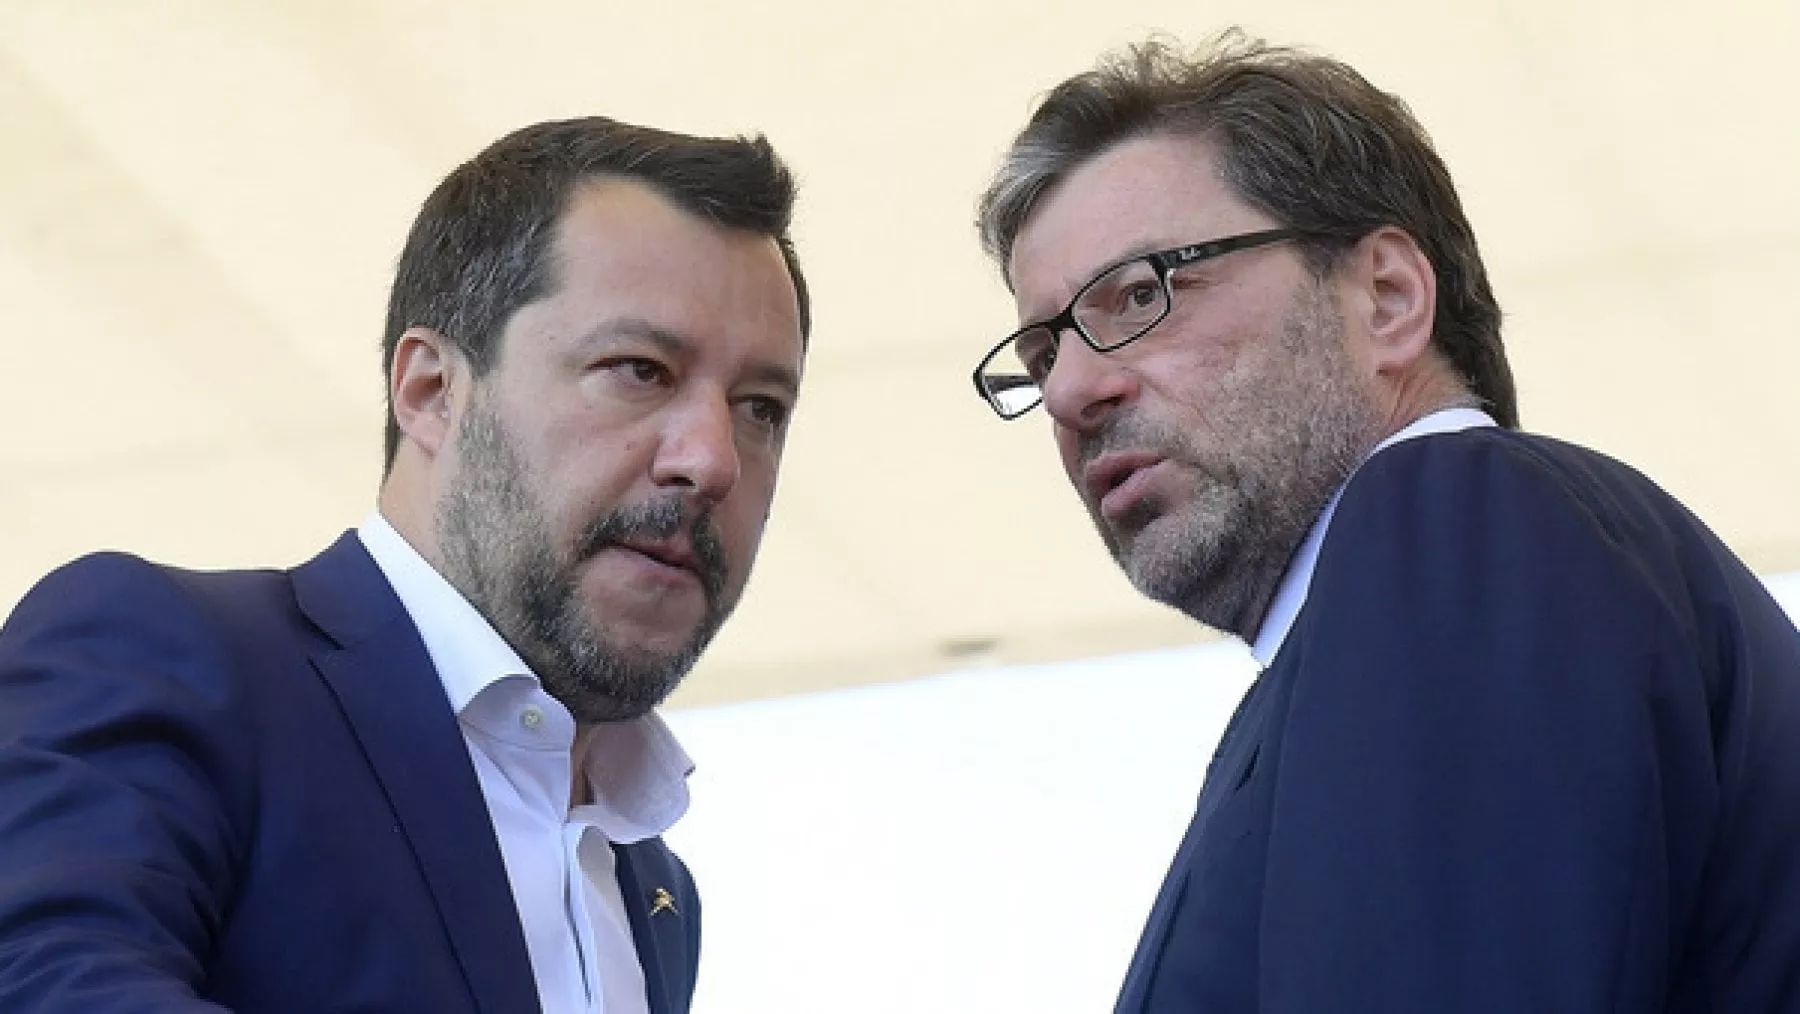 Salvini sventola bandiere Lega: Viminale e flat tax. E chiede anche presidenza Senato